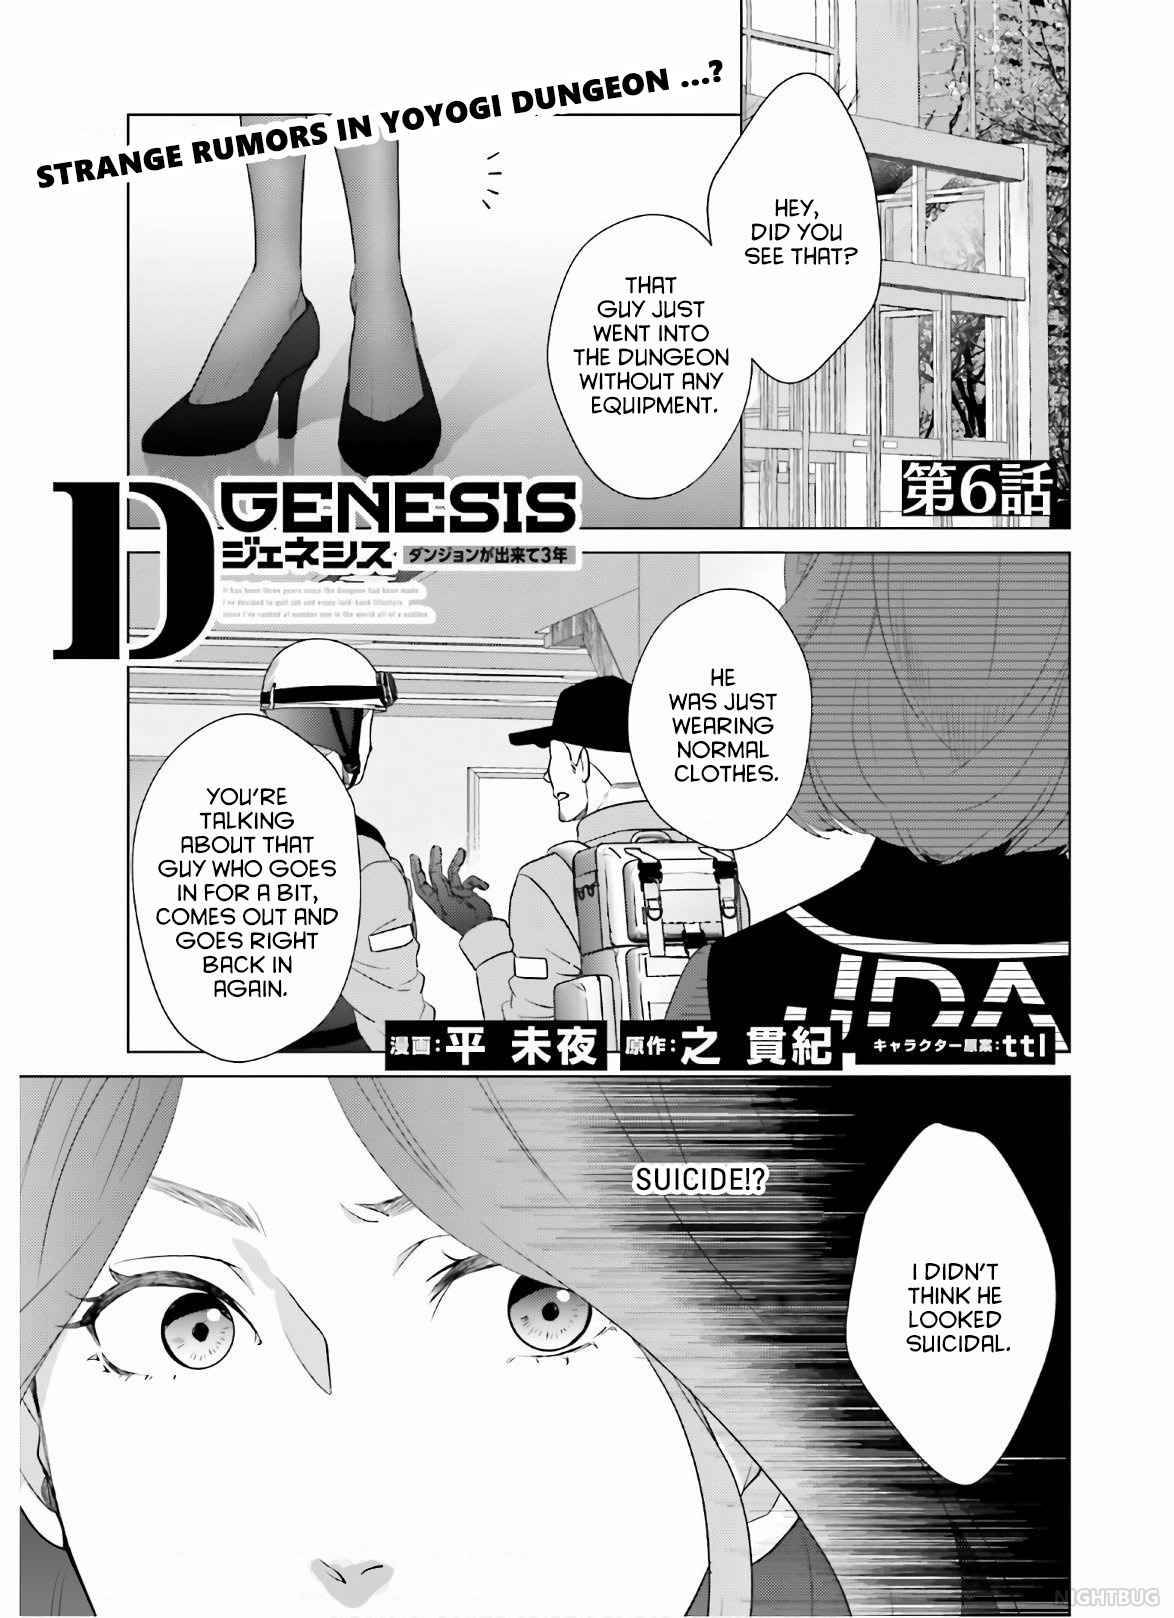 D Genesis: Dungeon Ga Dekite 3-Nen - chapter 6 - #1